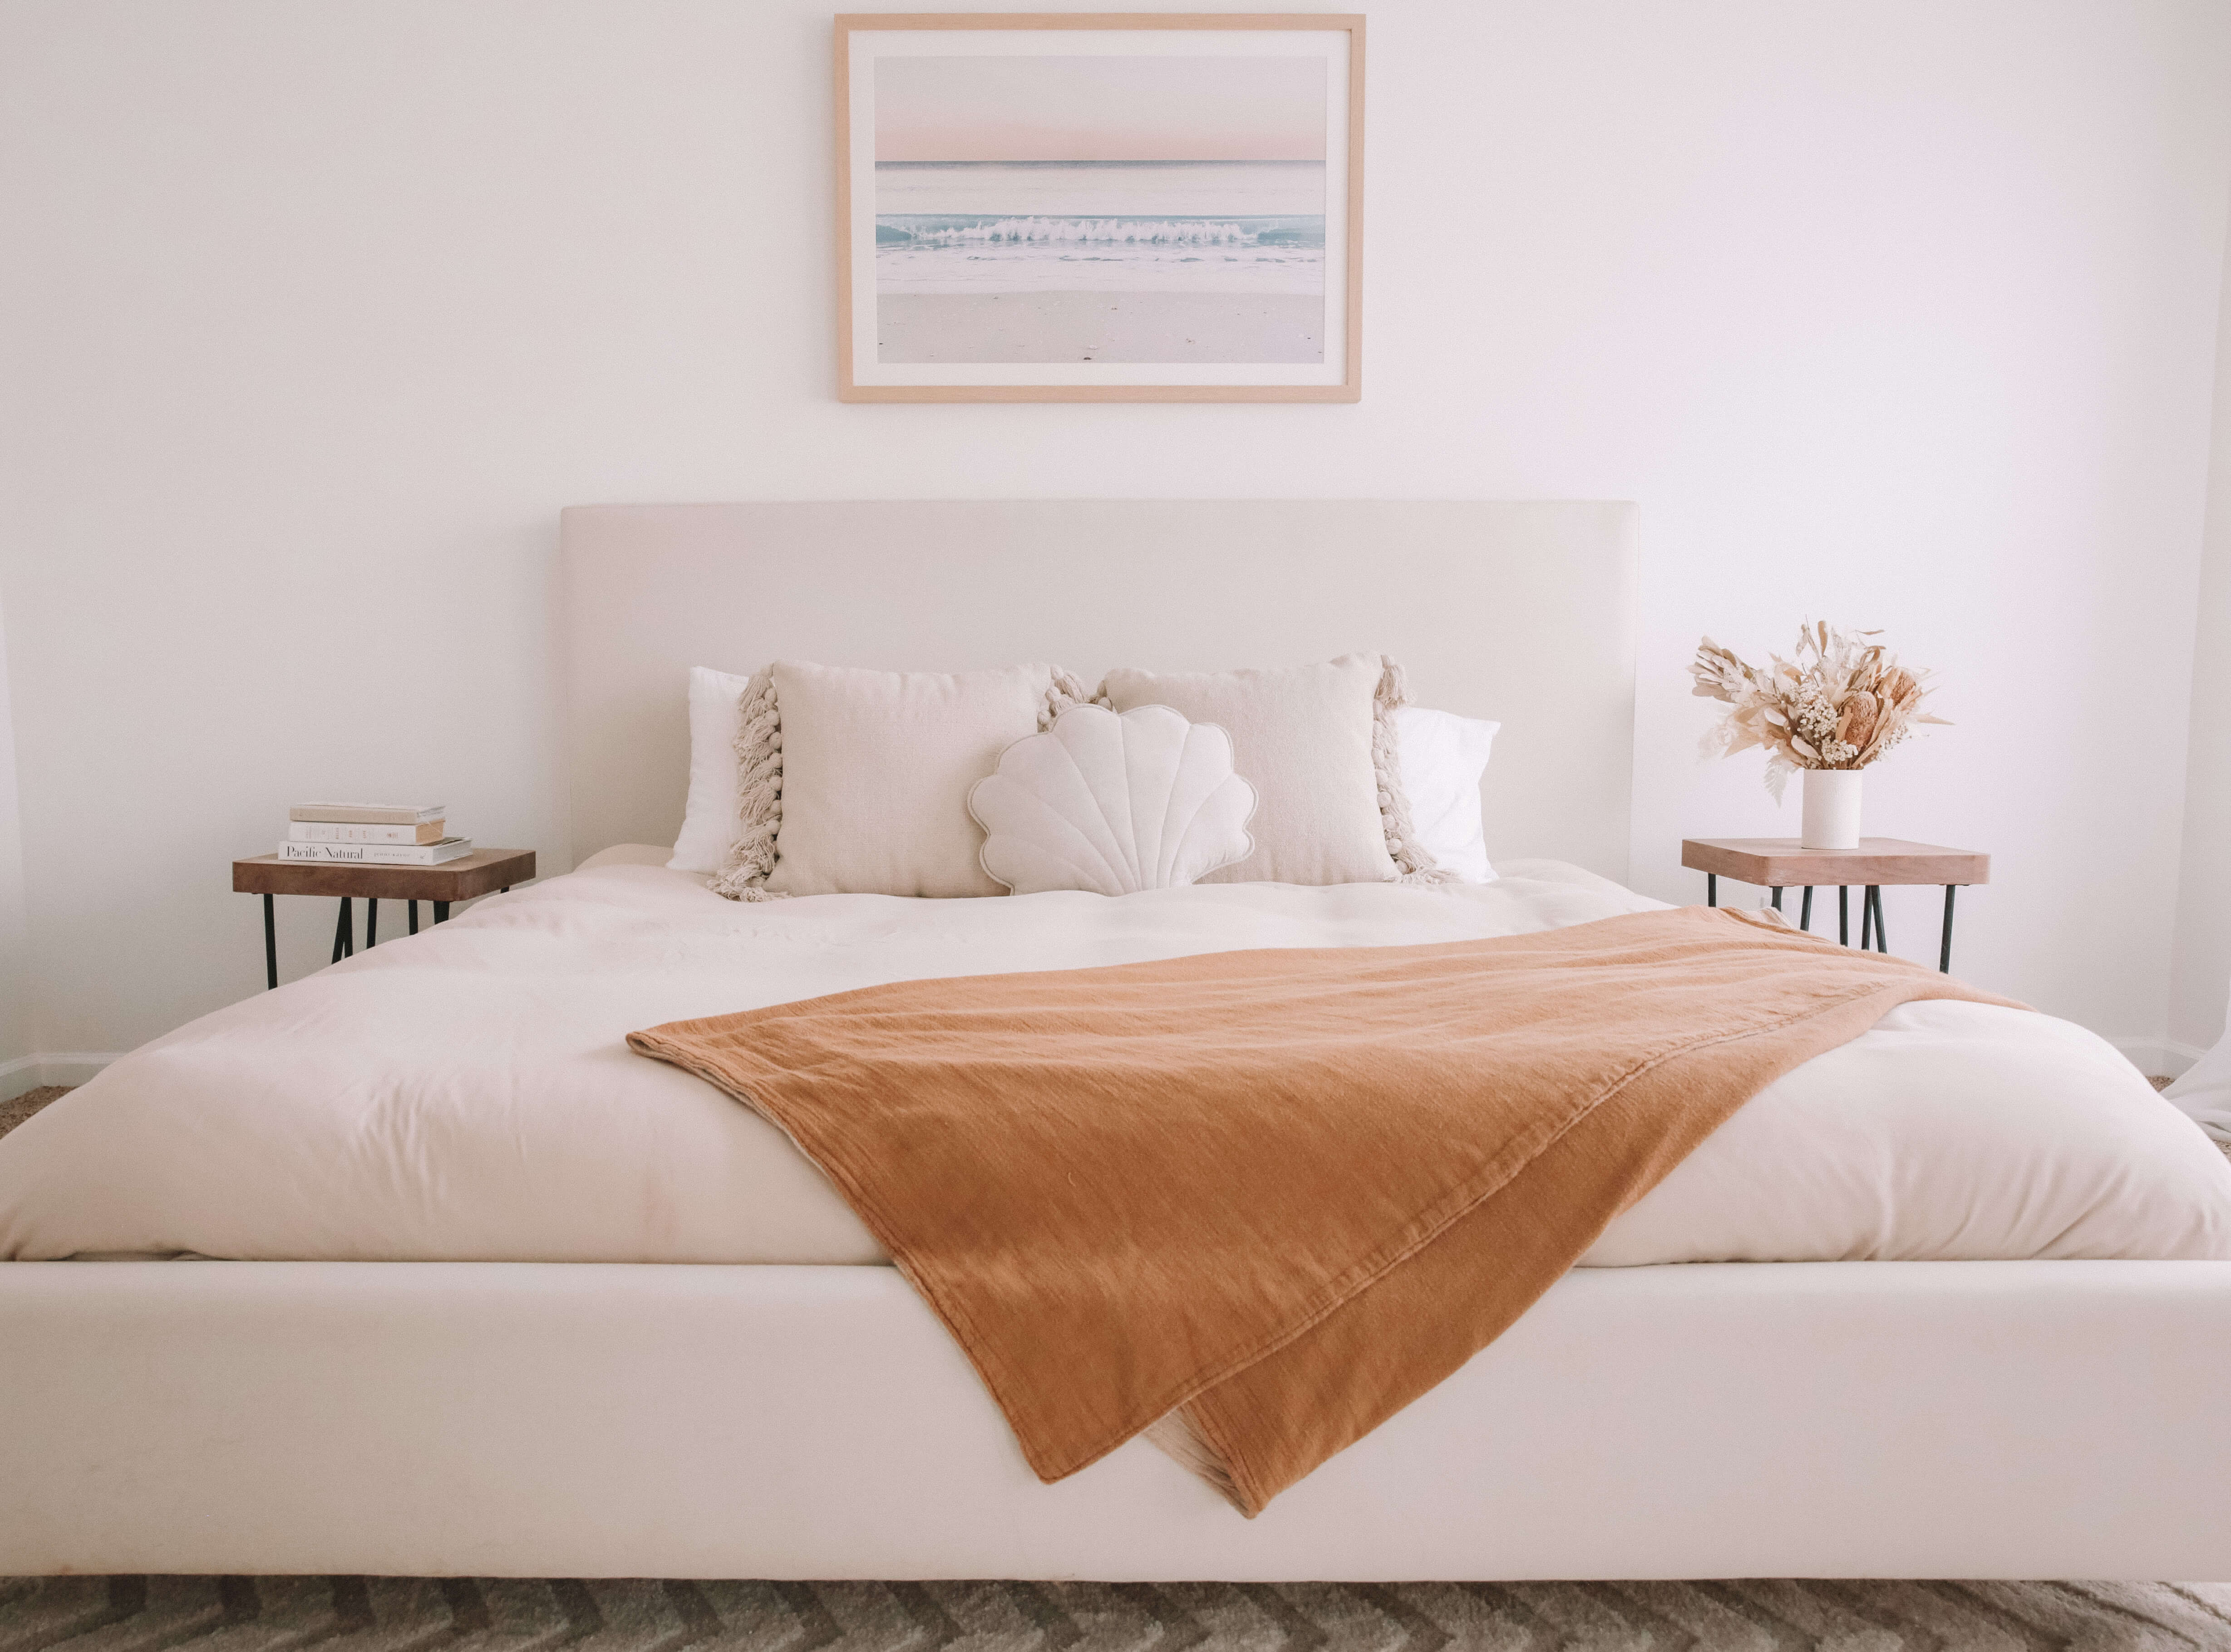 IRL: Bramo Bed in cream fabric